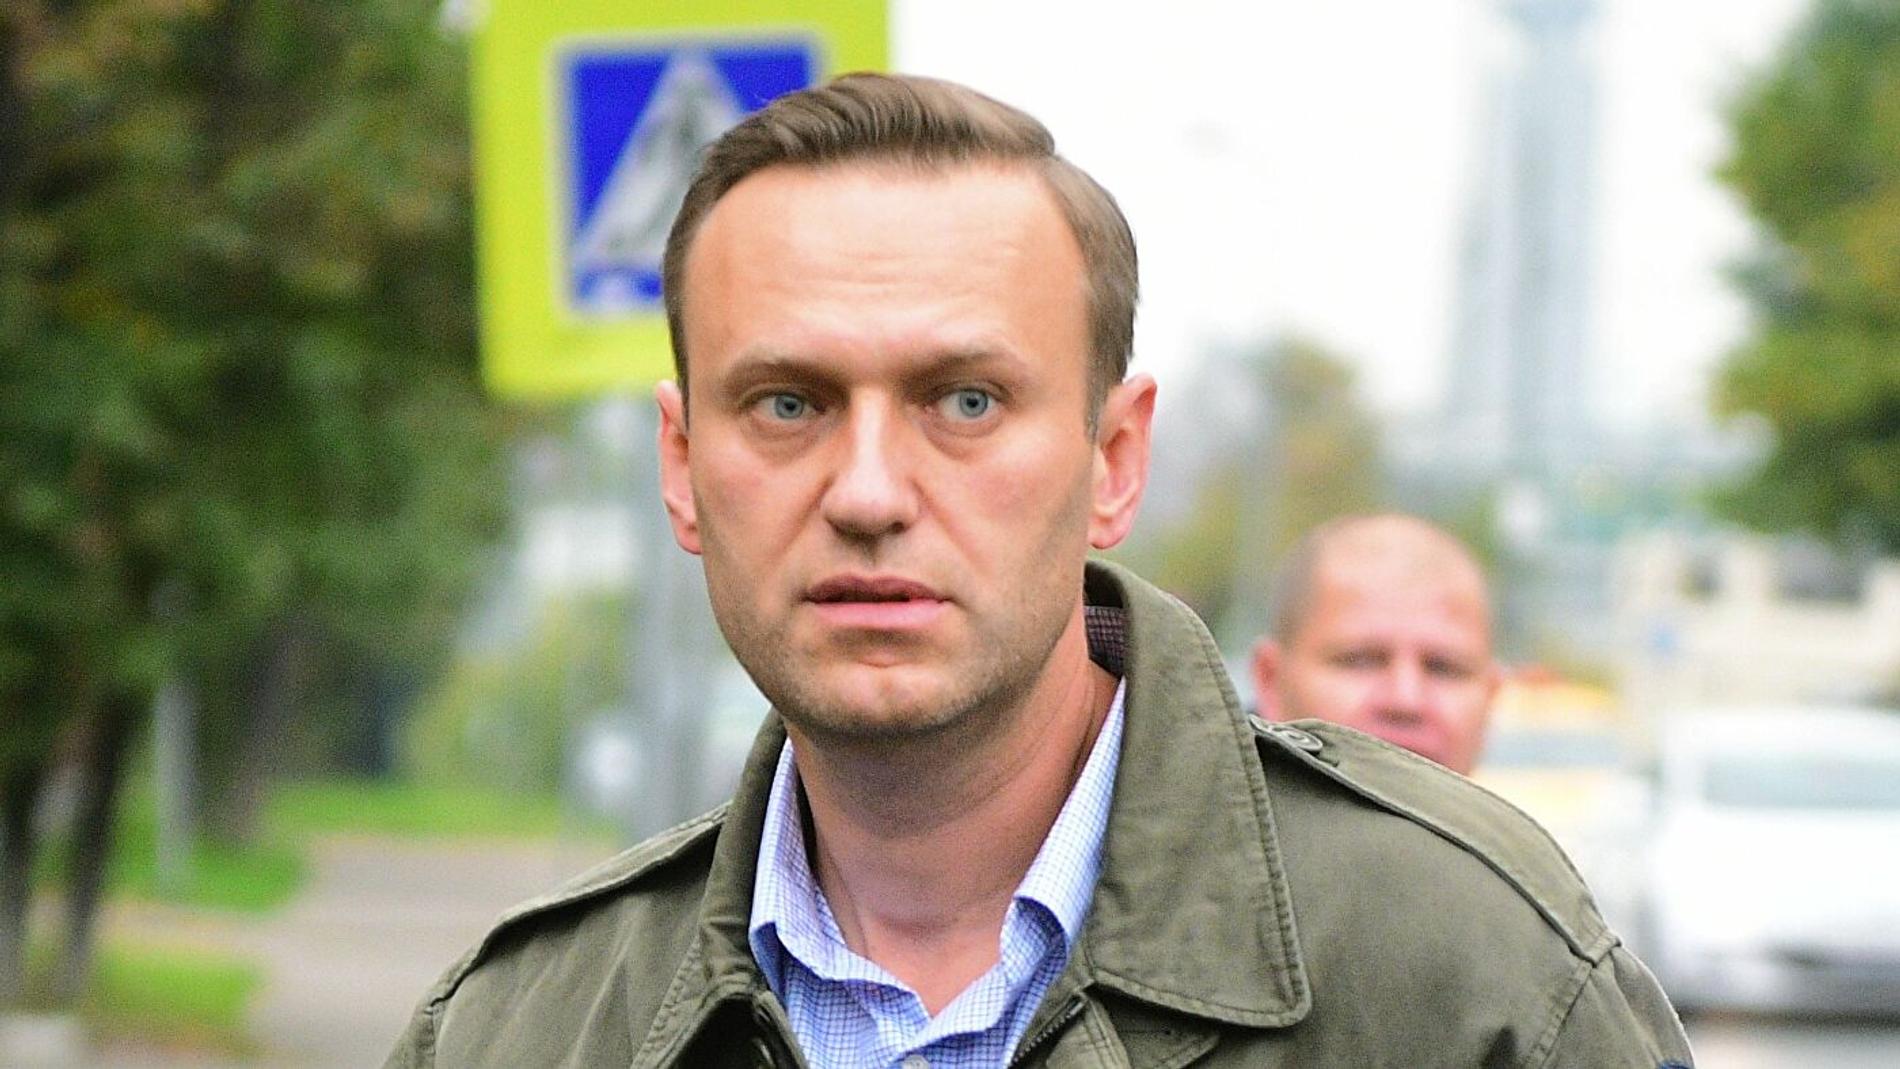 Профессиональный химик пояснил, почему отравители не смогли убить Навального